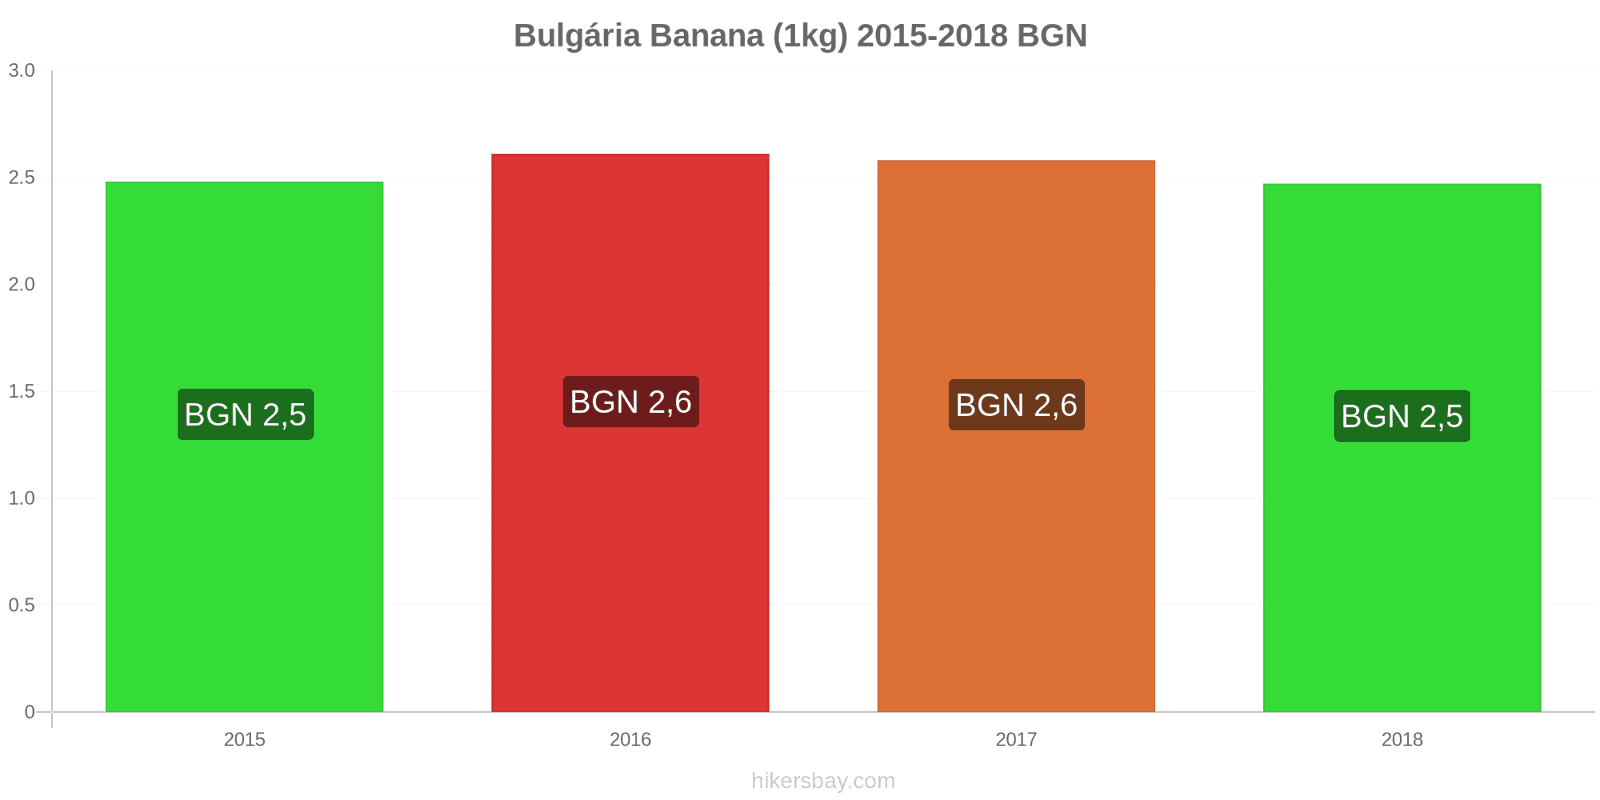 Bulgária mudanças de preços Bananas (1kg) hikersbay.com